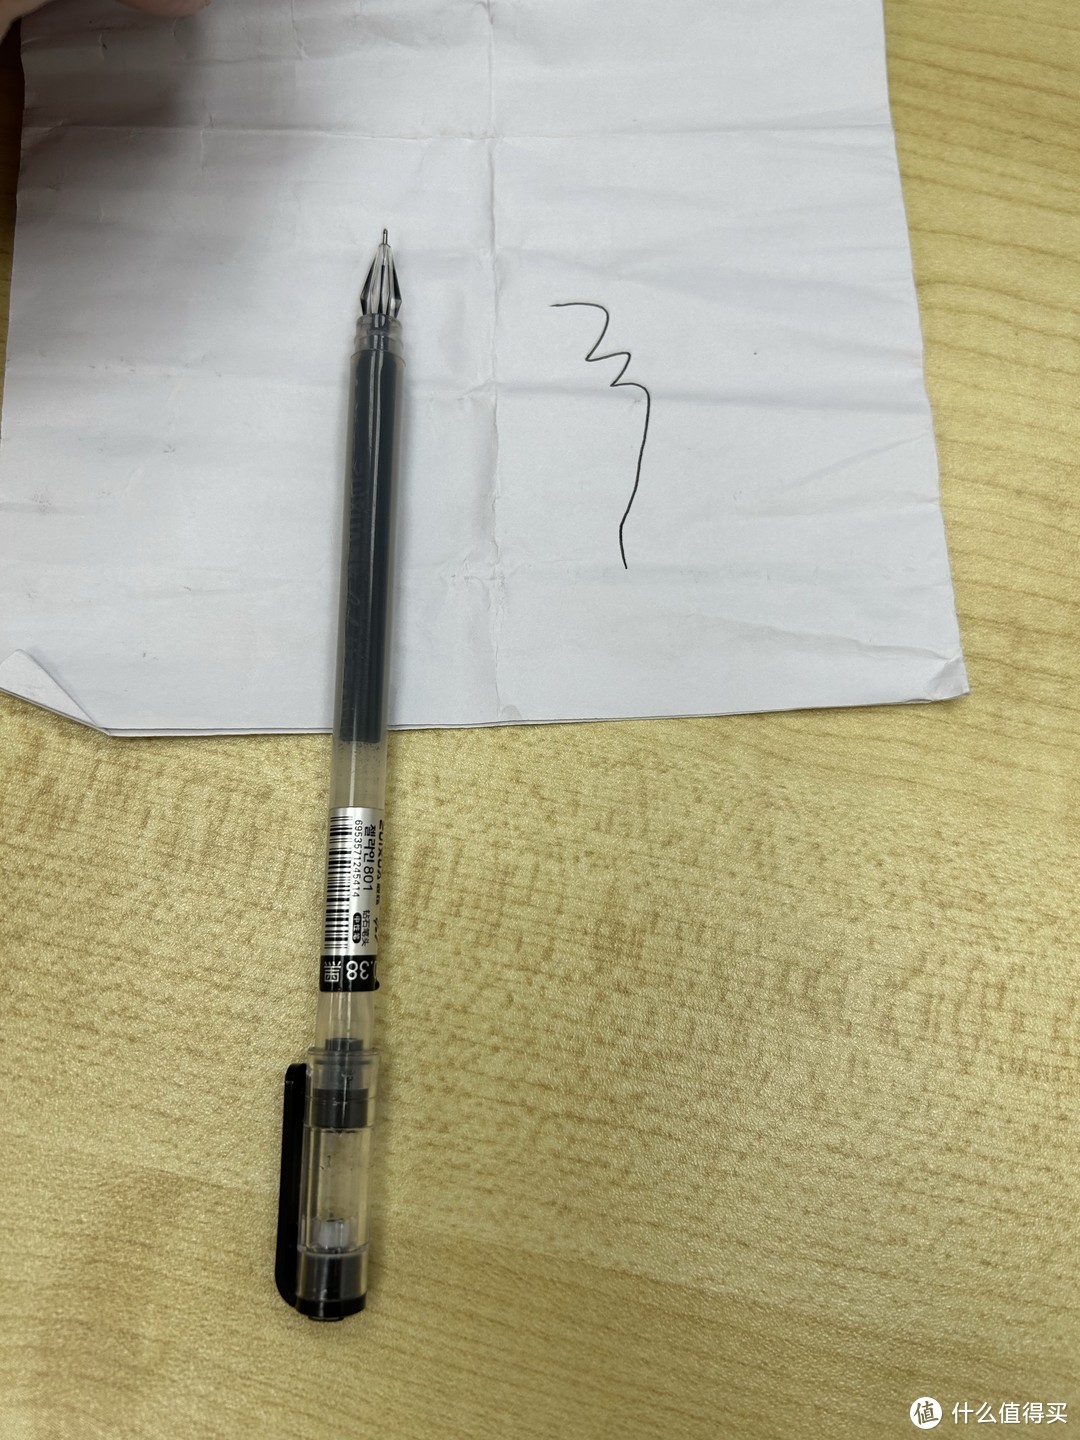 发现一支写字特别丝滑的笔